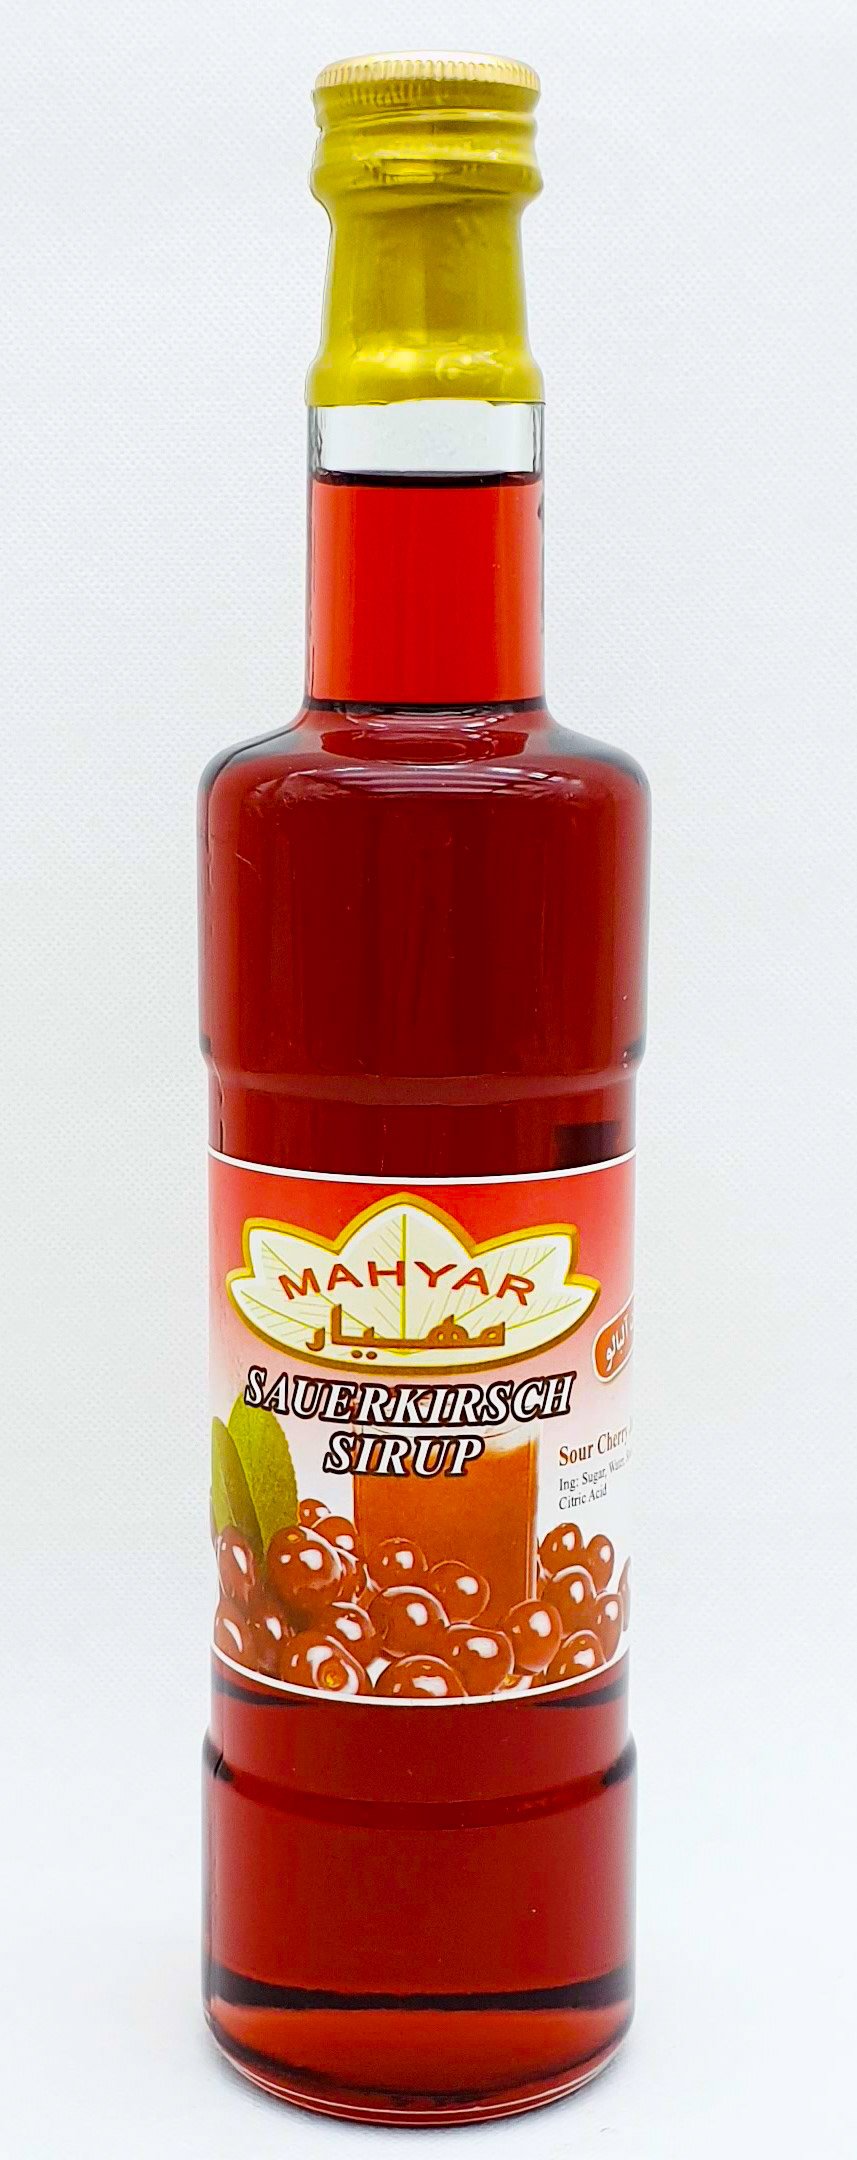 Mahyar Sharbate Albalu - Sauerkirsch Sirup 650g - Persienmarkt